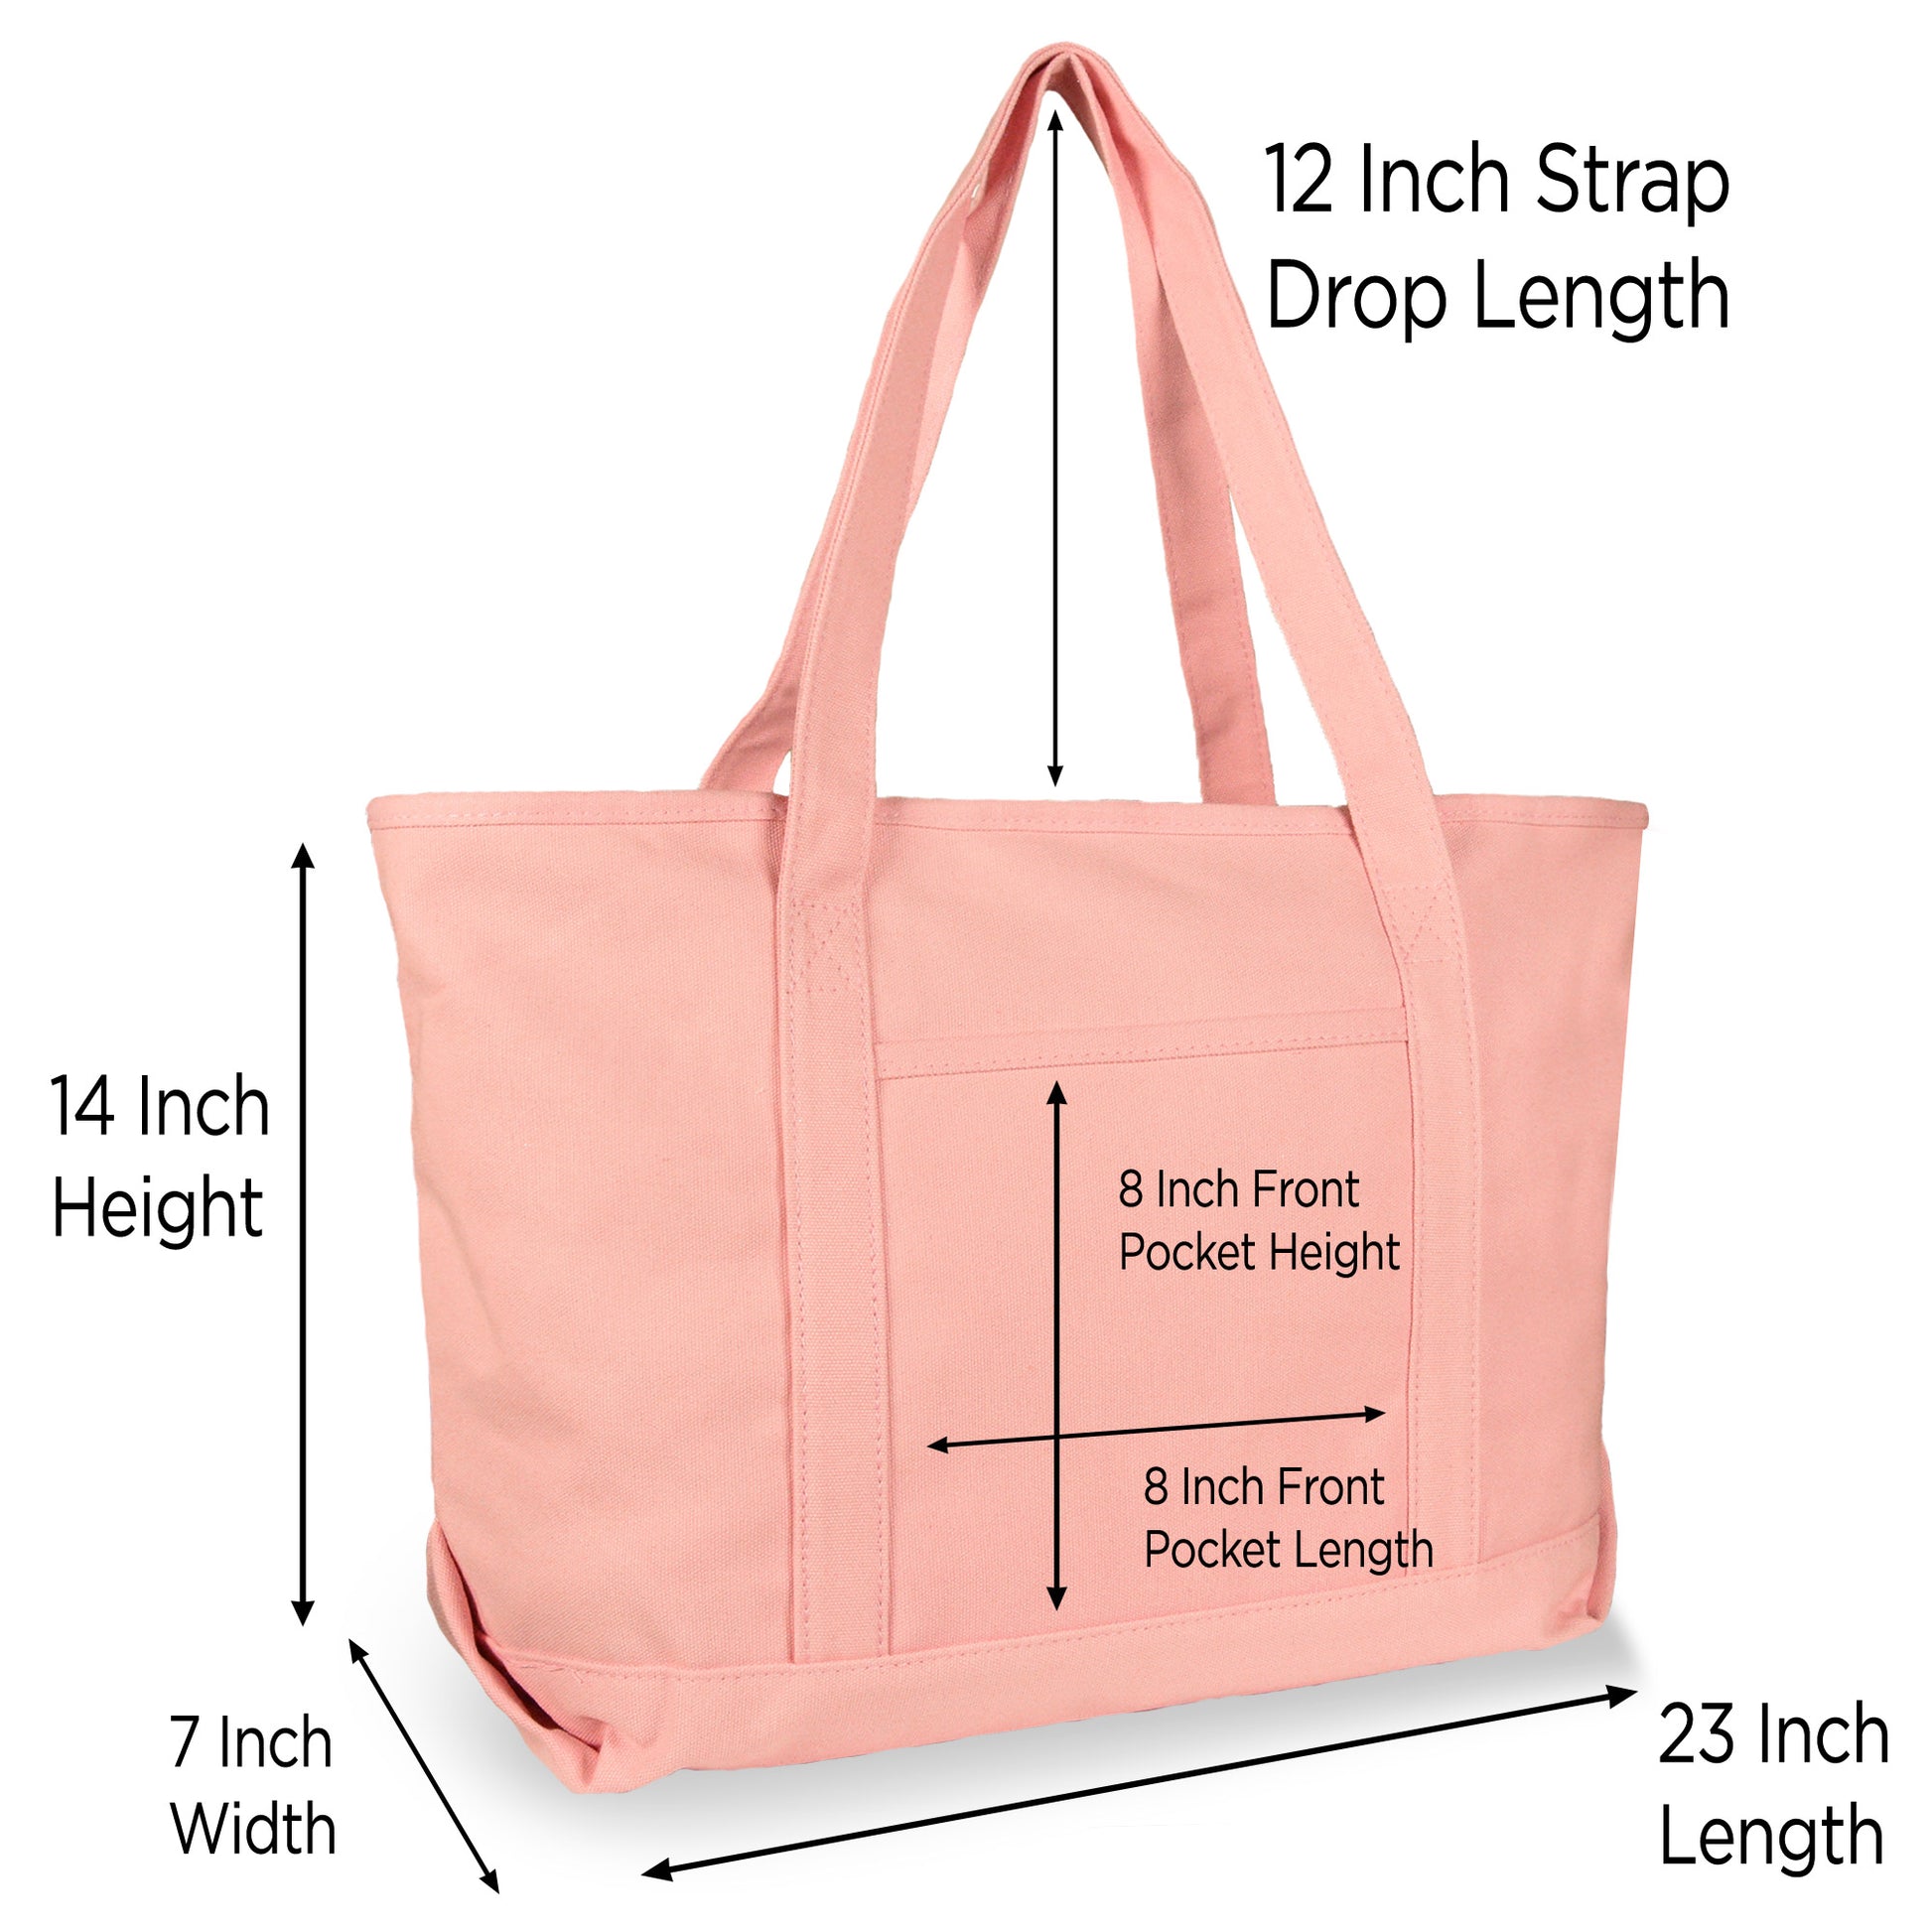 Dalix Women's Cotton Canvas Tote Bag Large Shoulder Bags Pink Monogram A-Z S